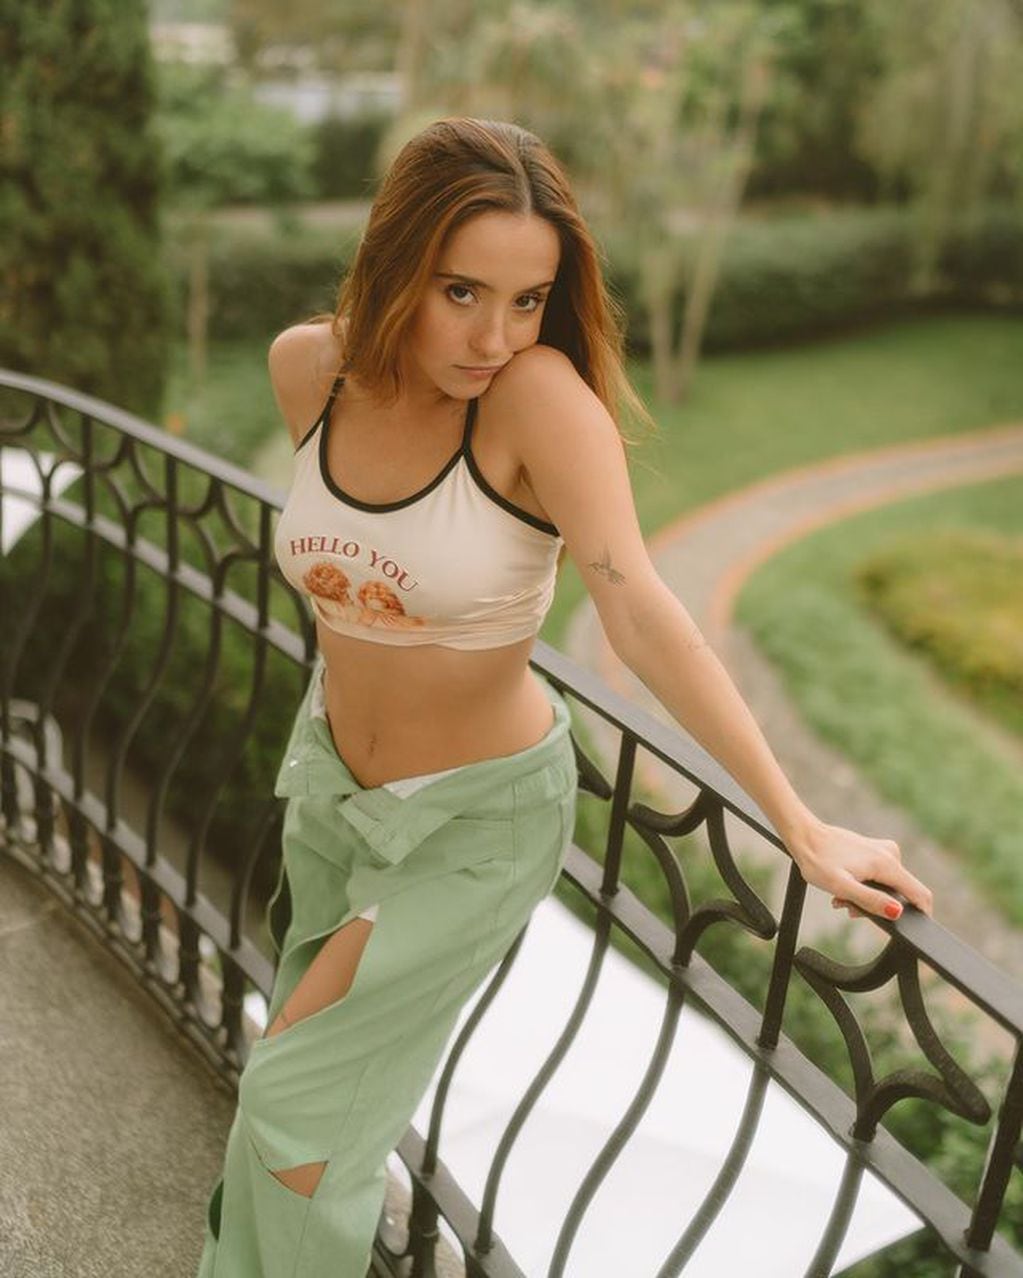 Las fotos en Instagram de Evaluna dignas de una modelo